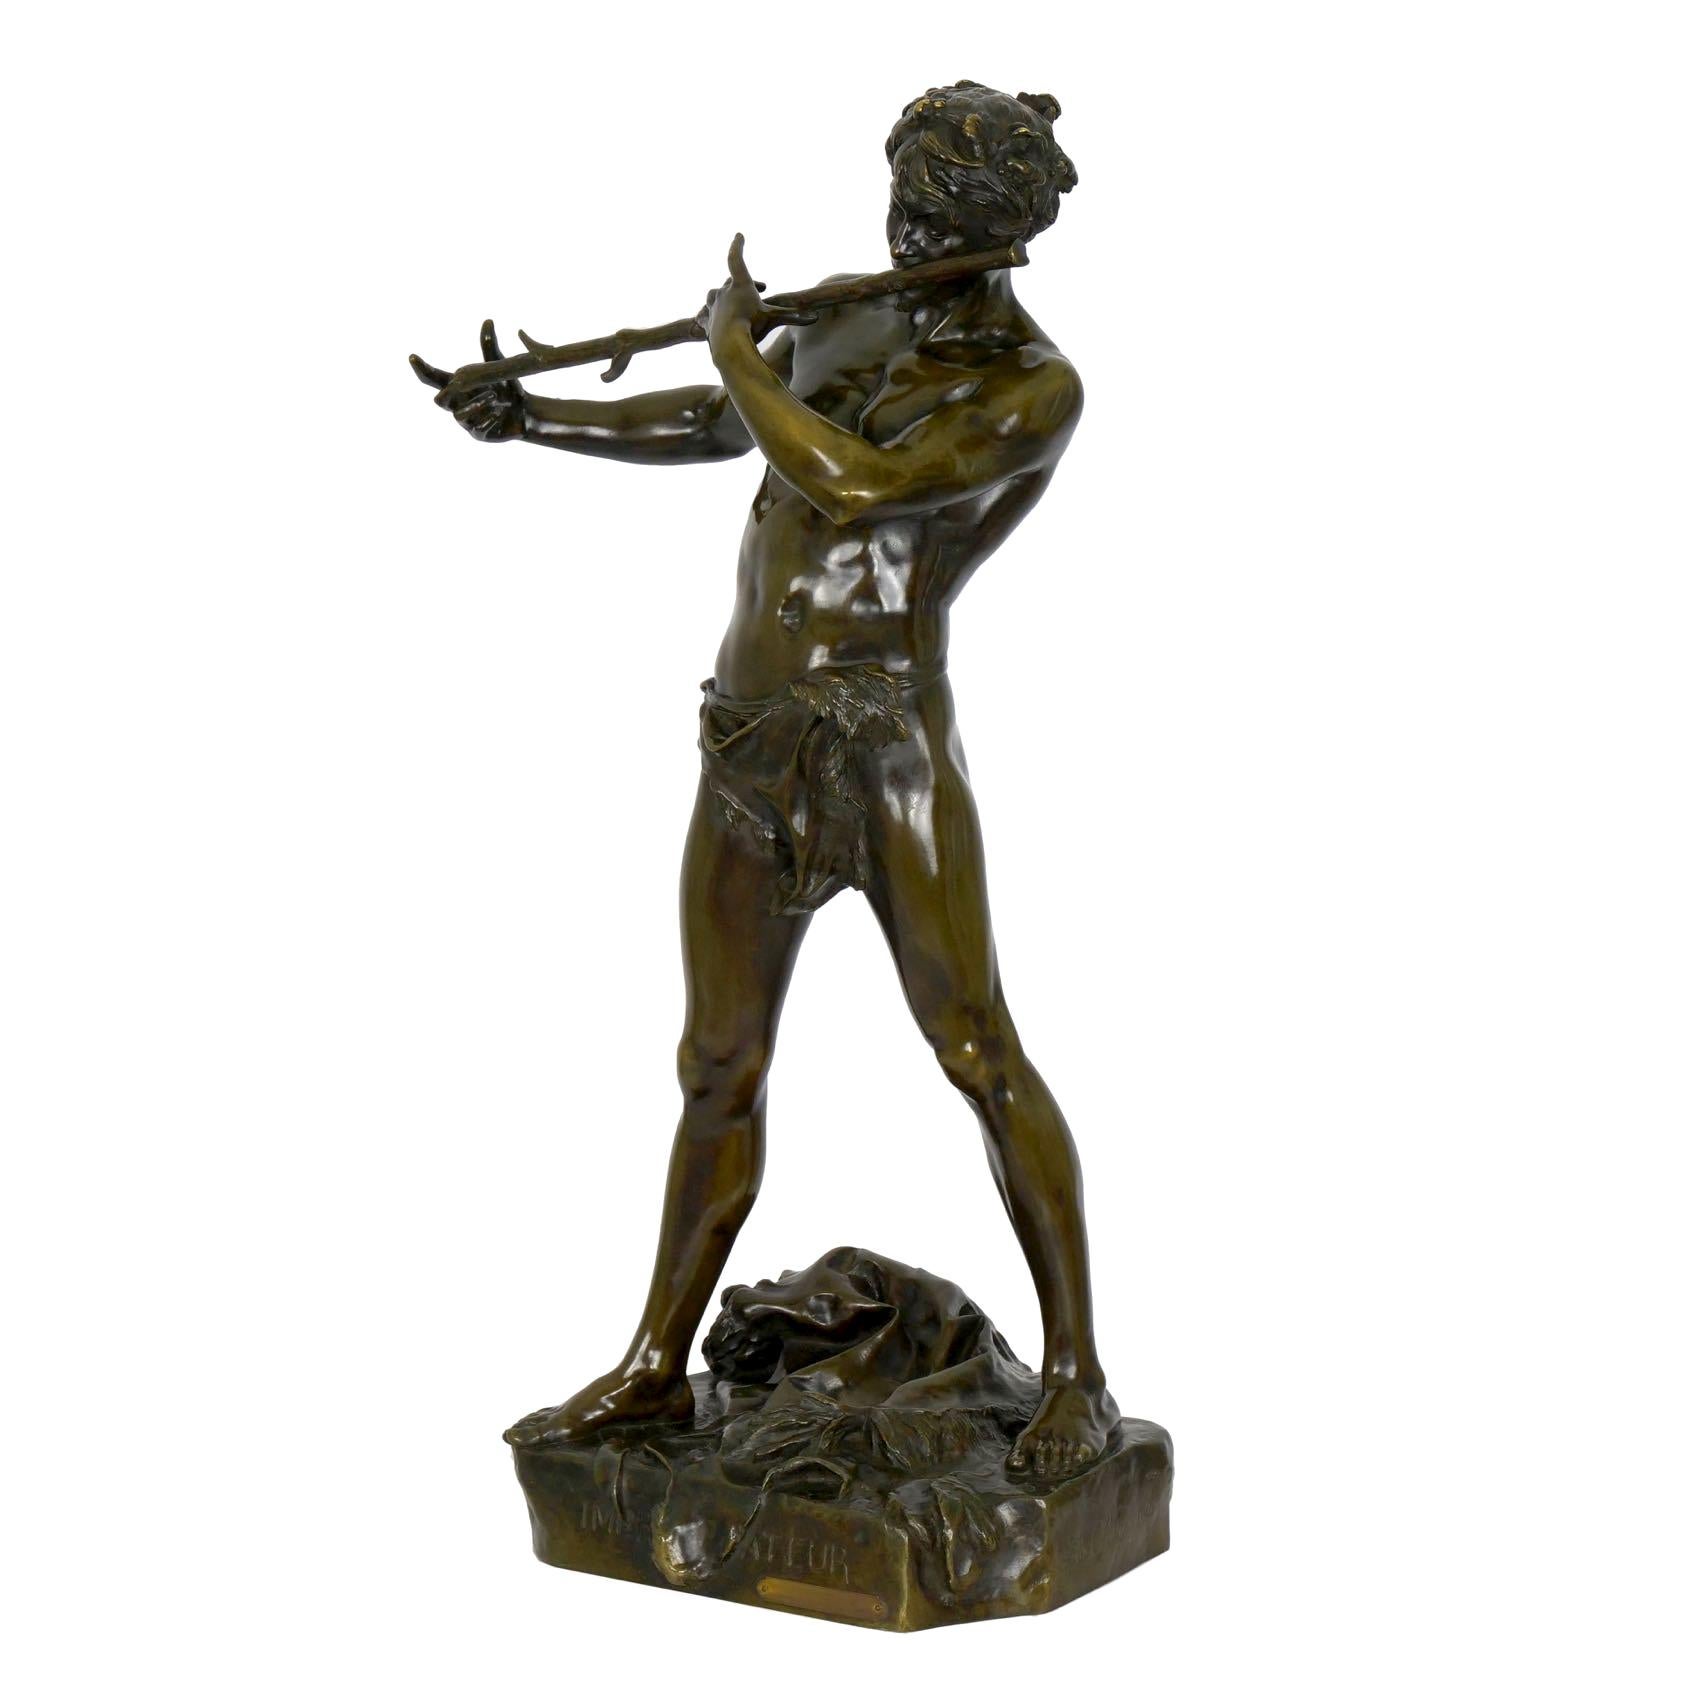 French Antique Bronze Sculpture “L’Improvisateur” by Felix Charpentier & Colin